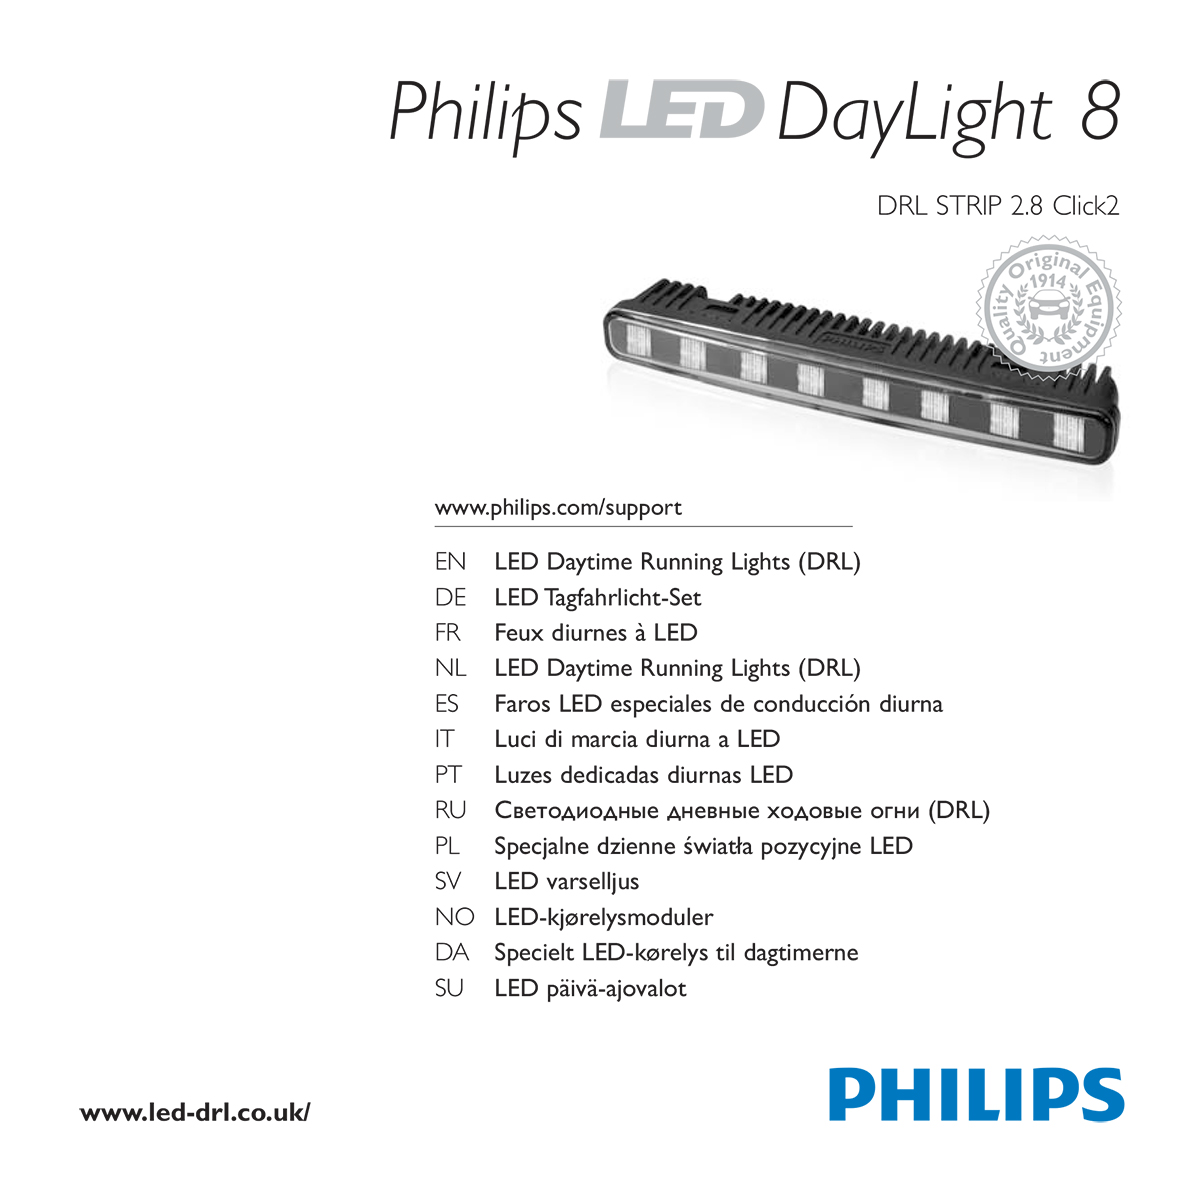 Philips LED DayLight 8 user guide - full pdf version